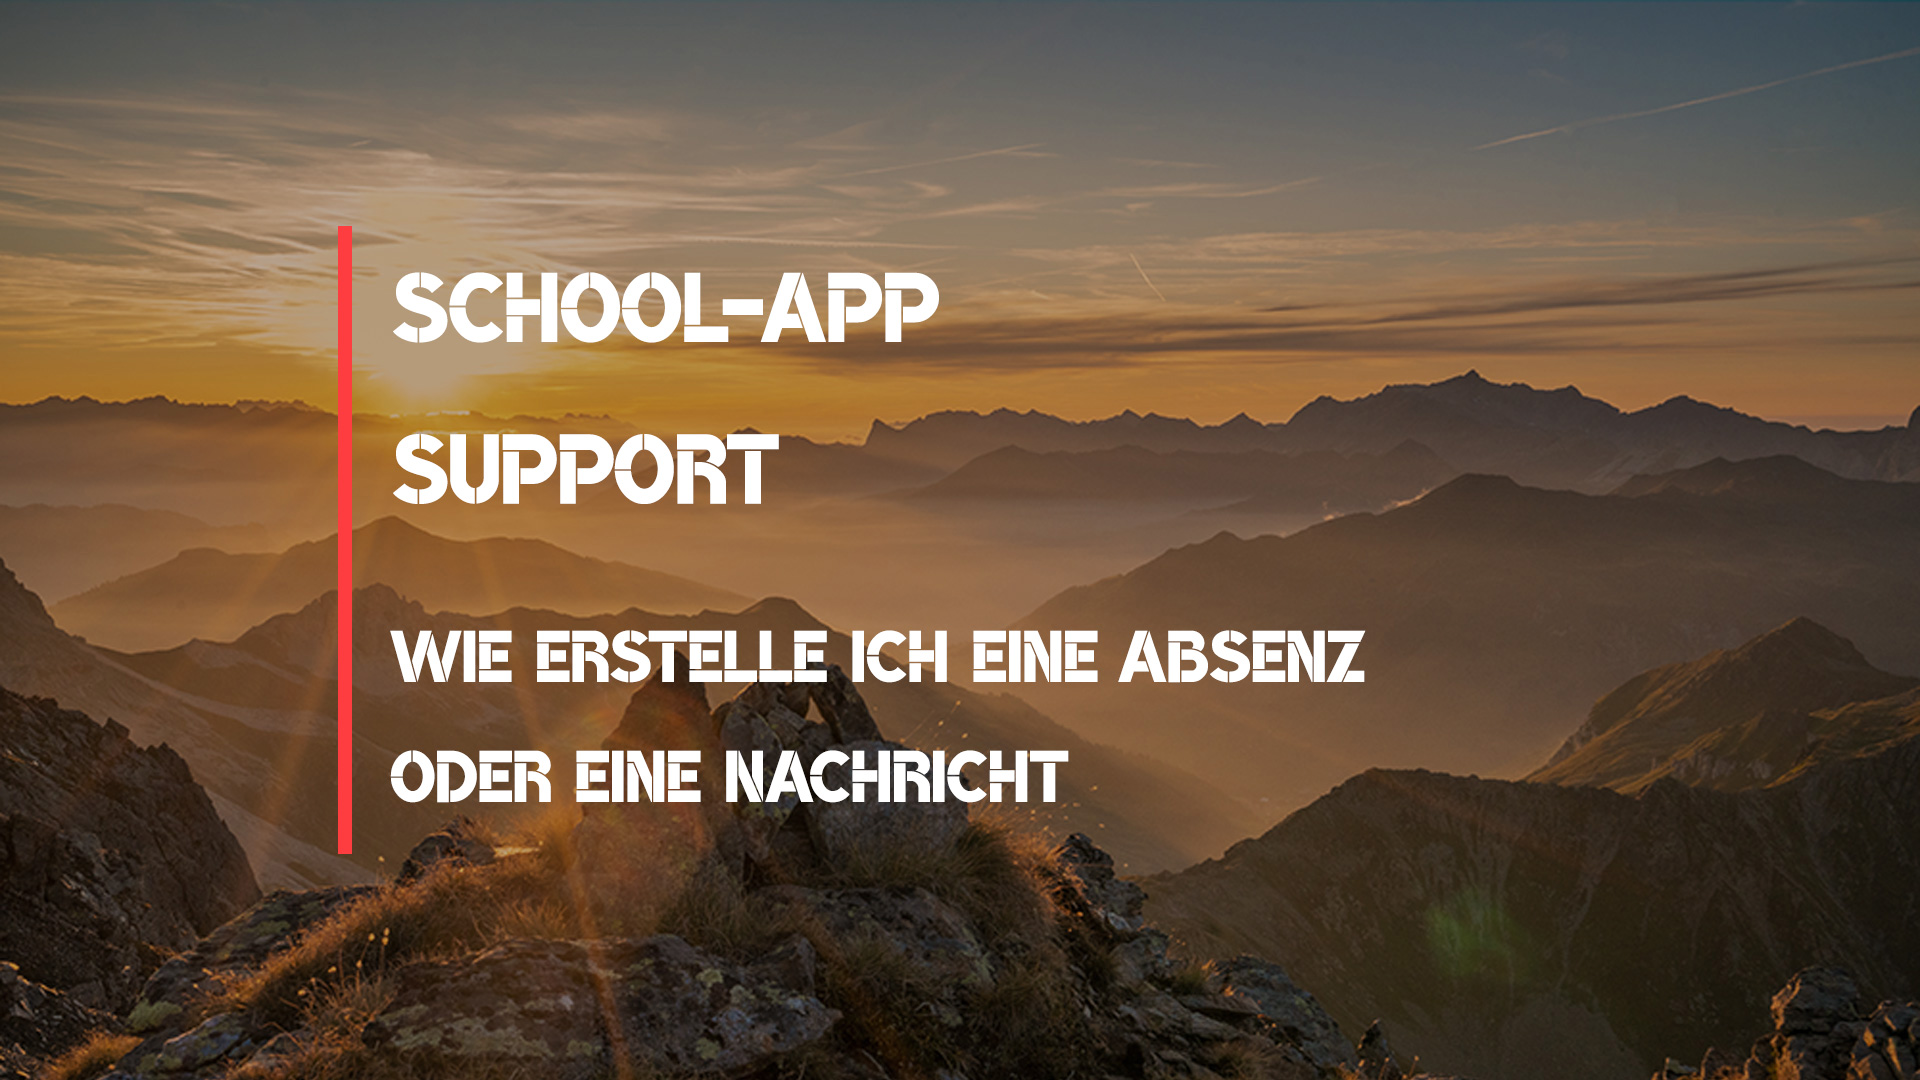 School-App Tutorial – Das verfassen von Absenzen oder Nachrichten